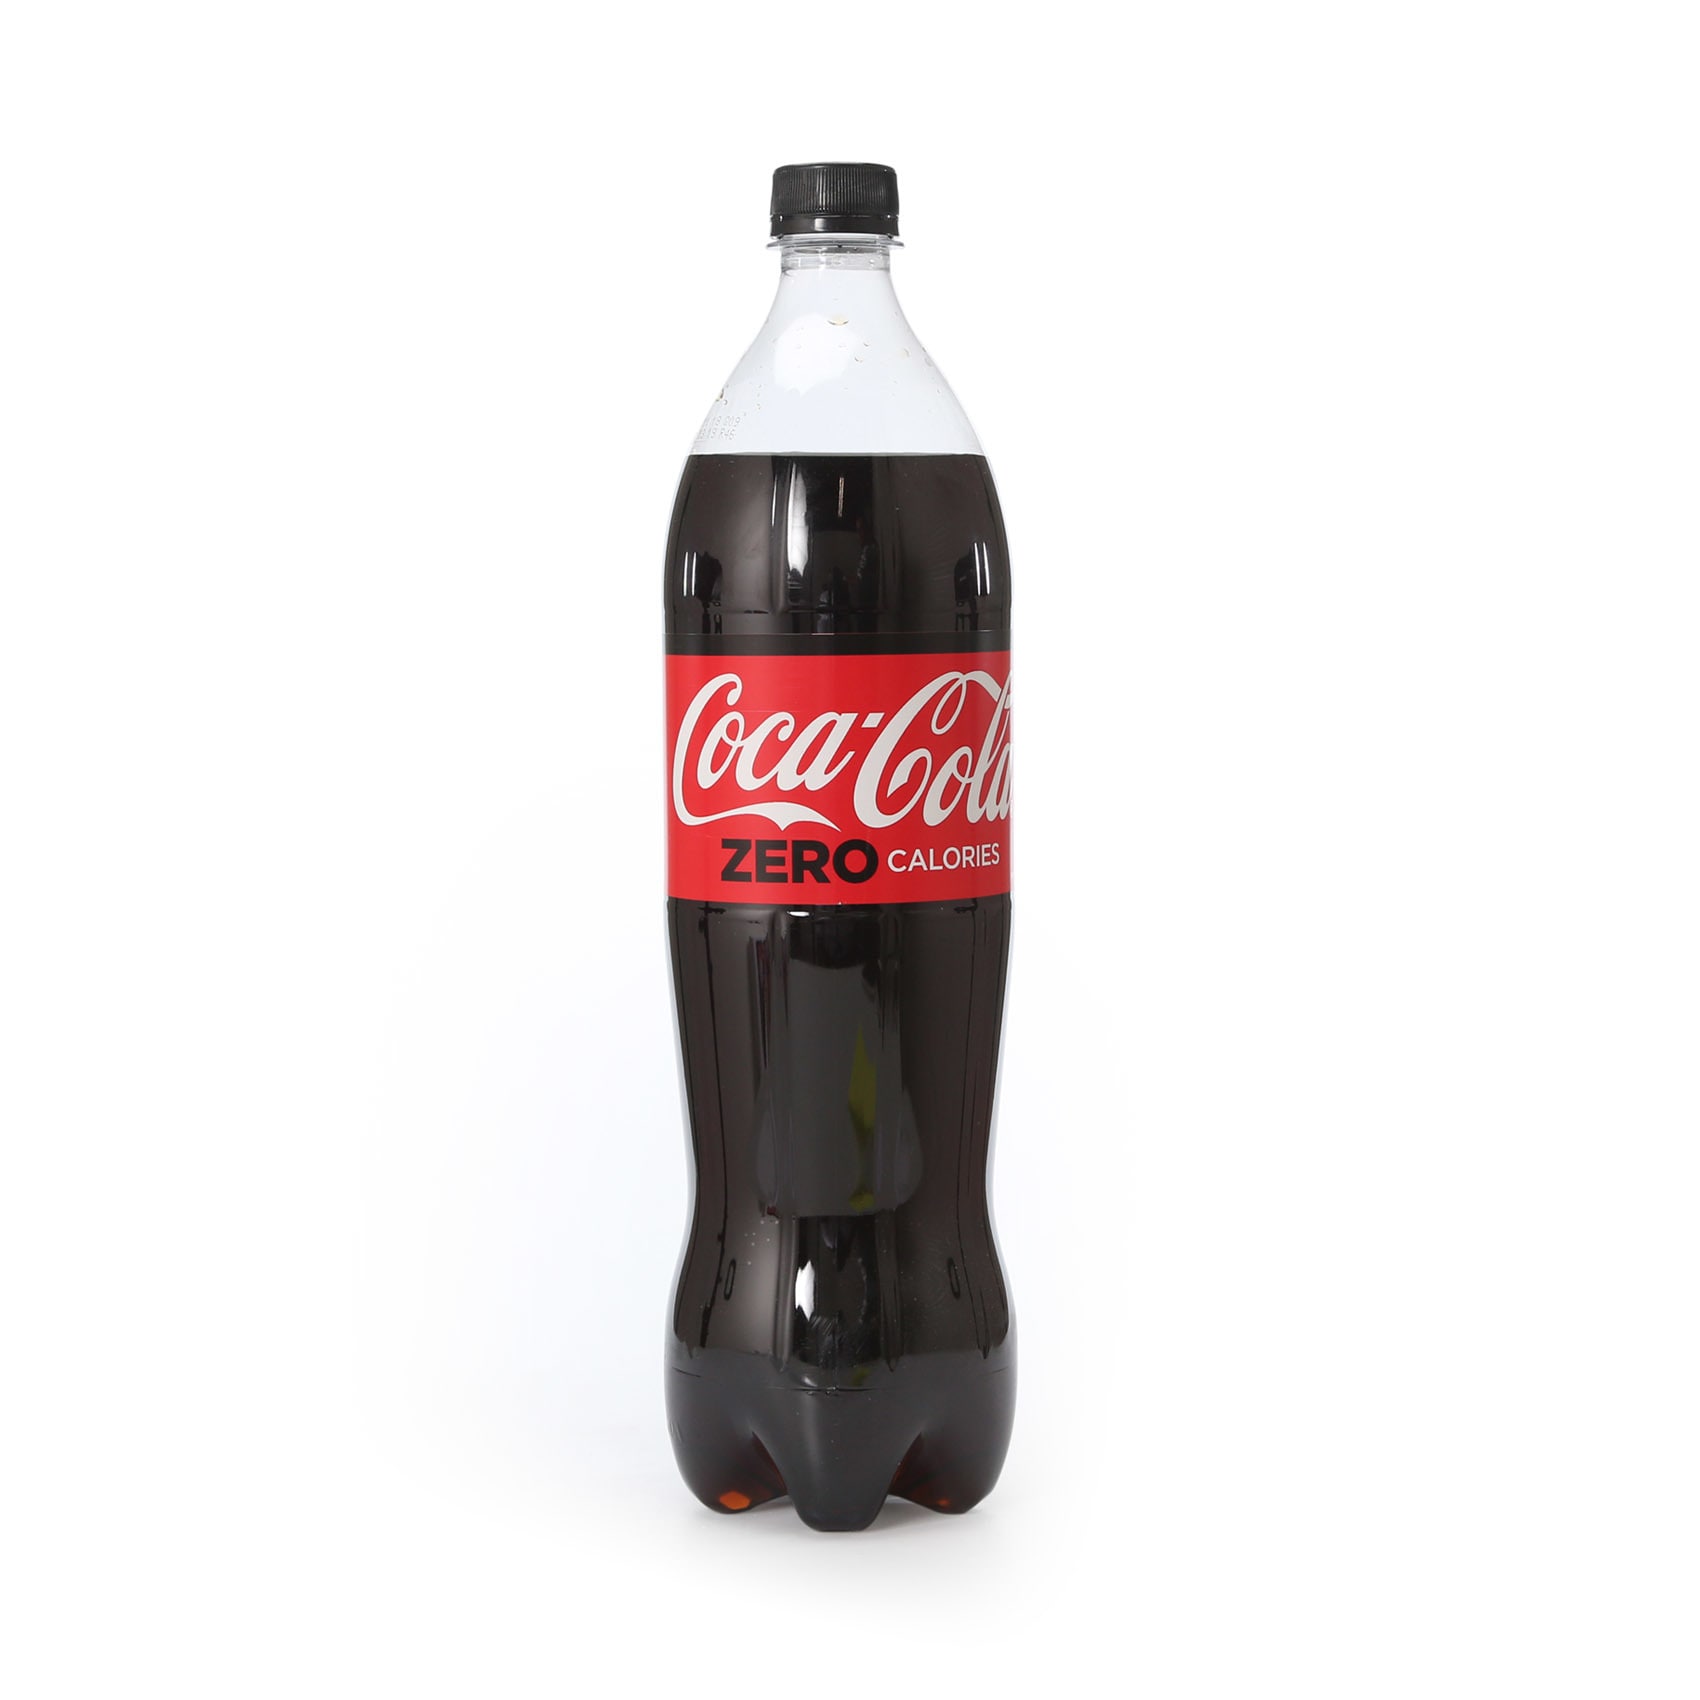 kontanter Fugtig virtuel Coca-cola zero calories Soft Drink 1.25L